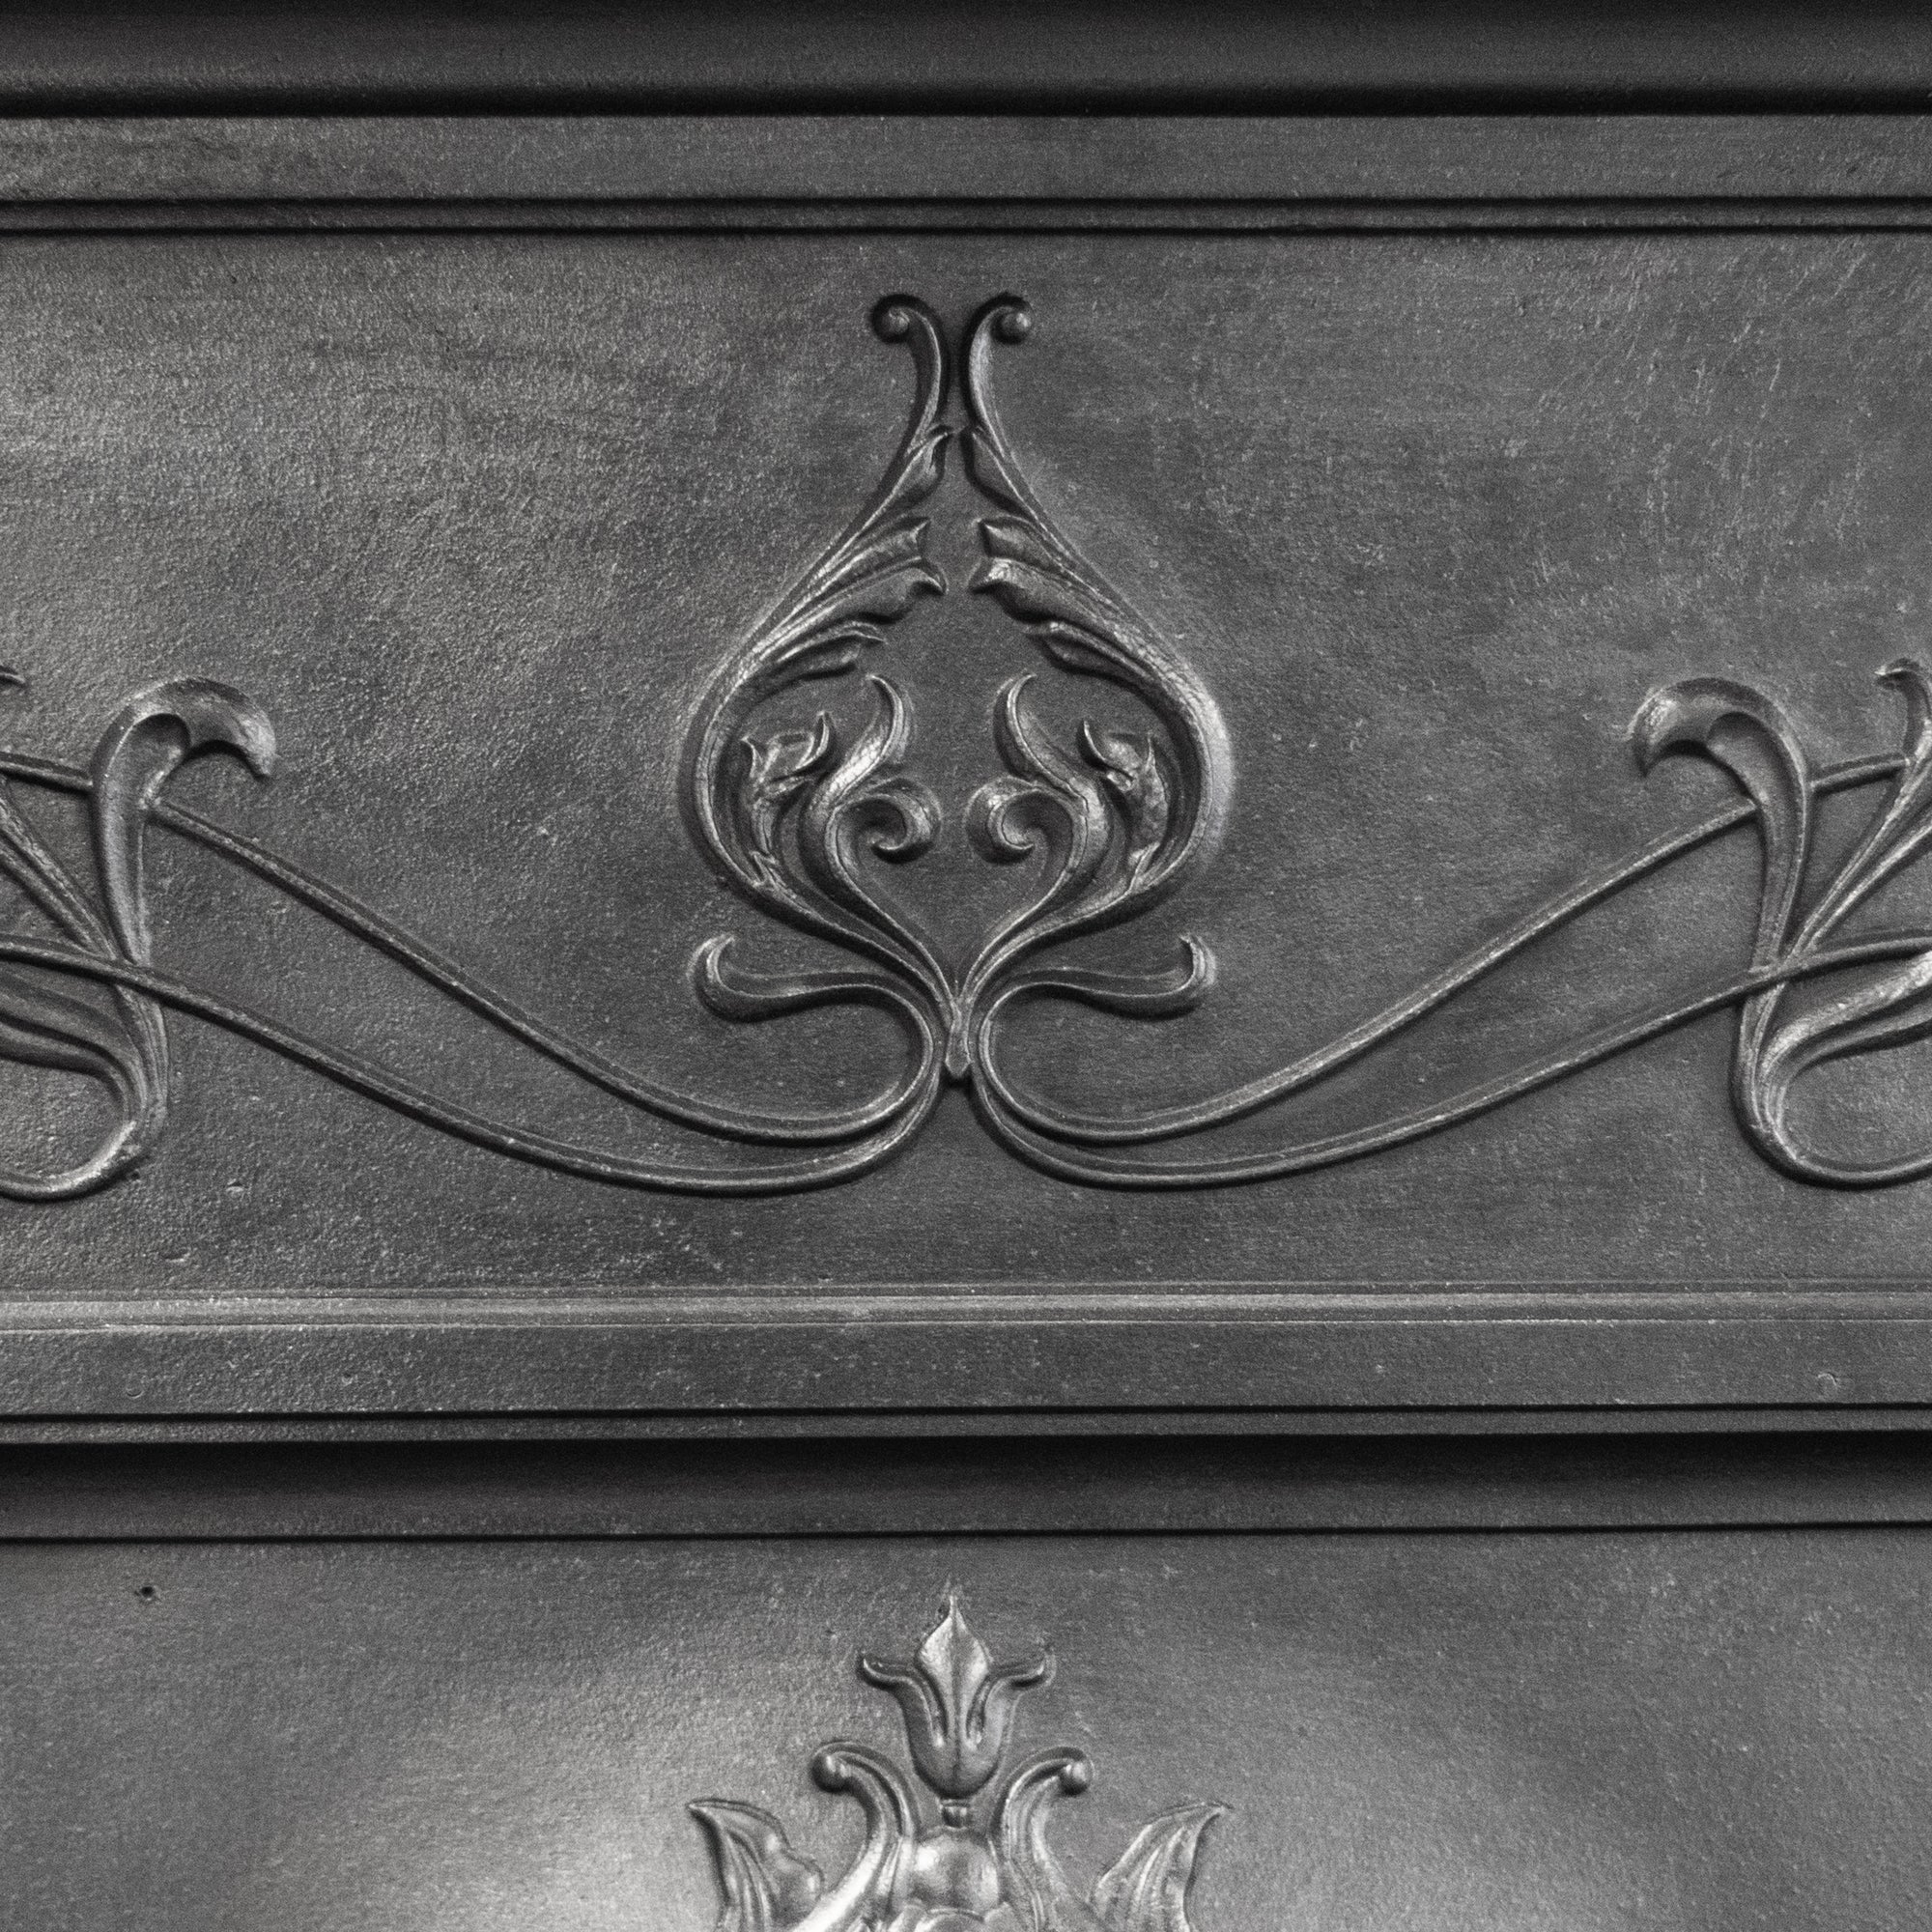 Antique Art Nouveau Cast Iron Combination Fireplace | The Architectural Forum